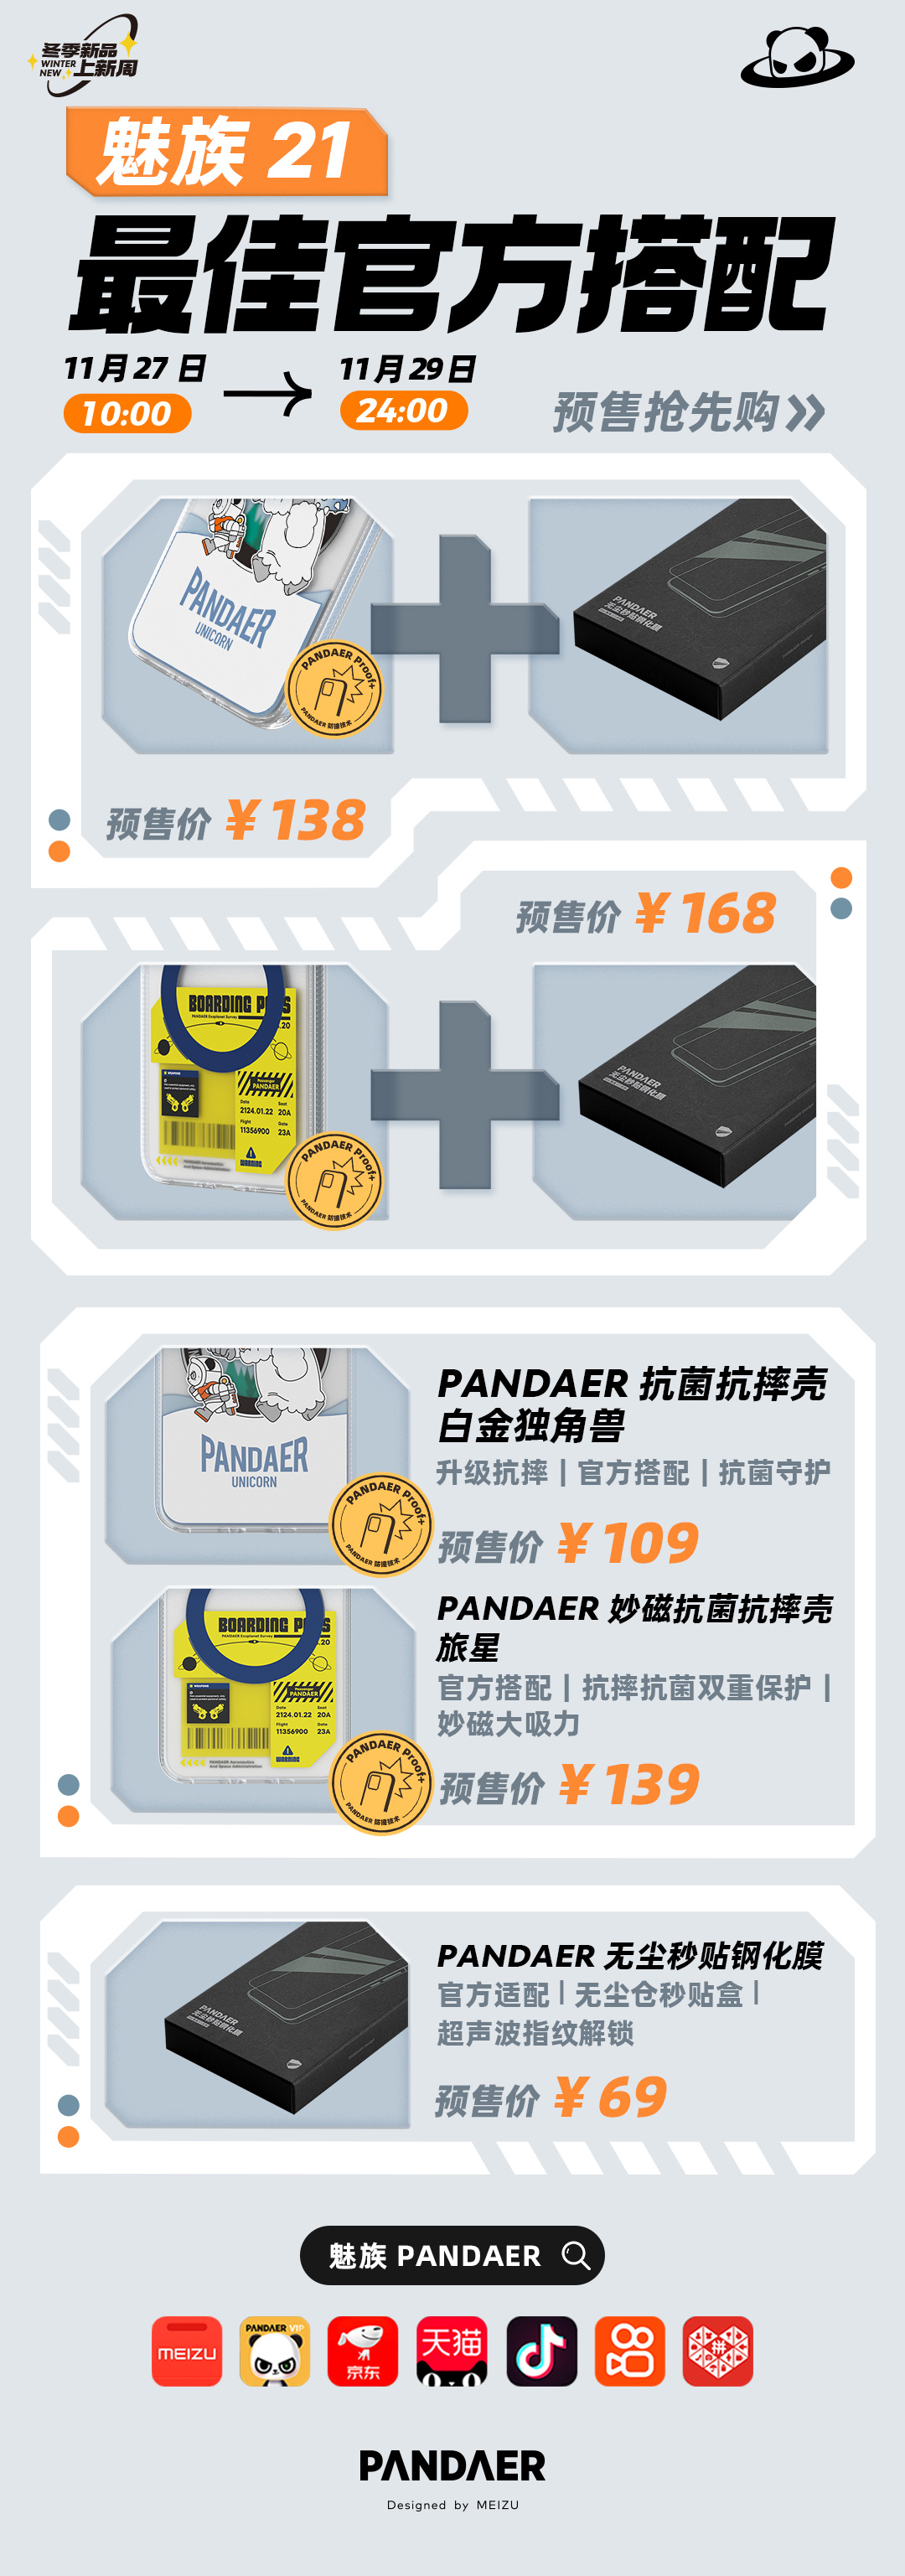 魅族 21 PANDAER 手机壳膜套装上架：官方钢化膜 69 元，套装 138 元起